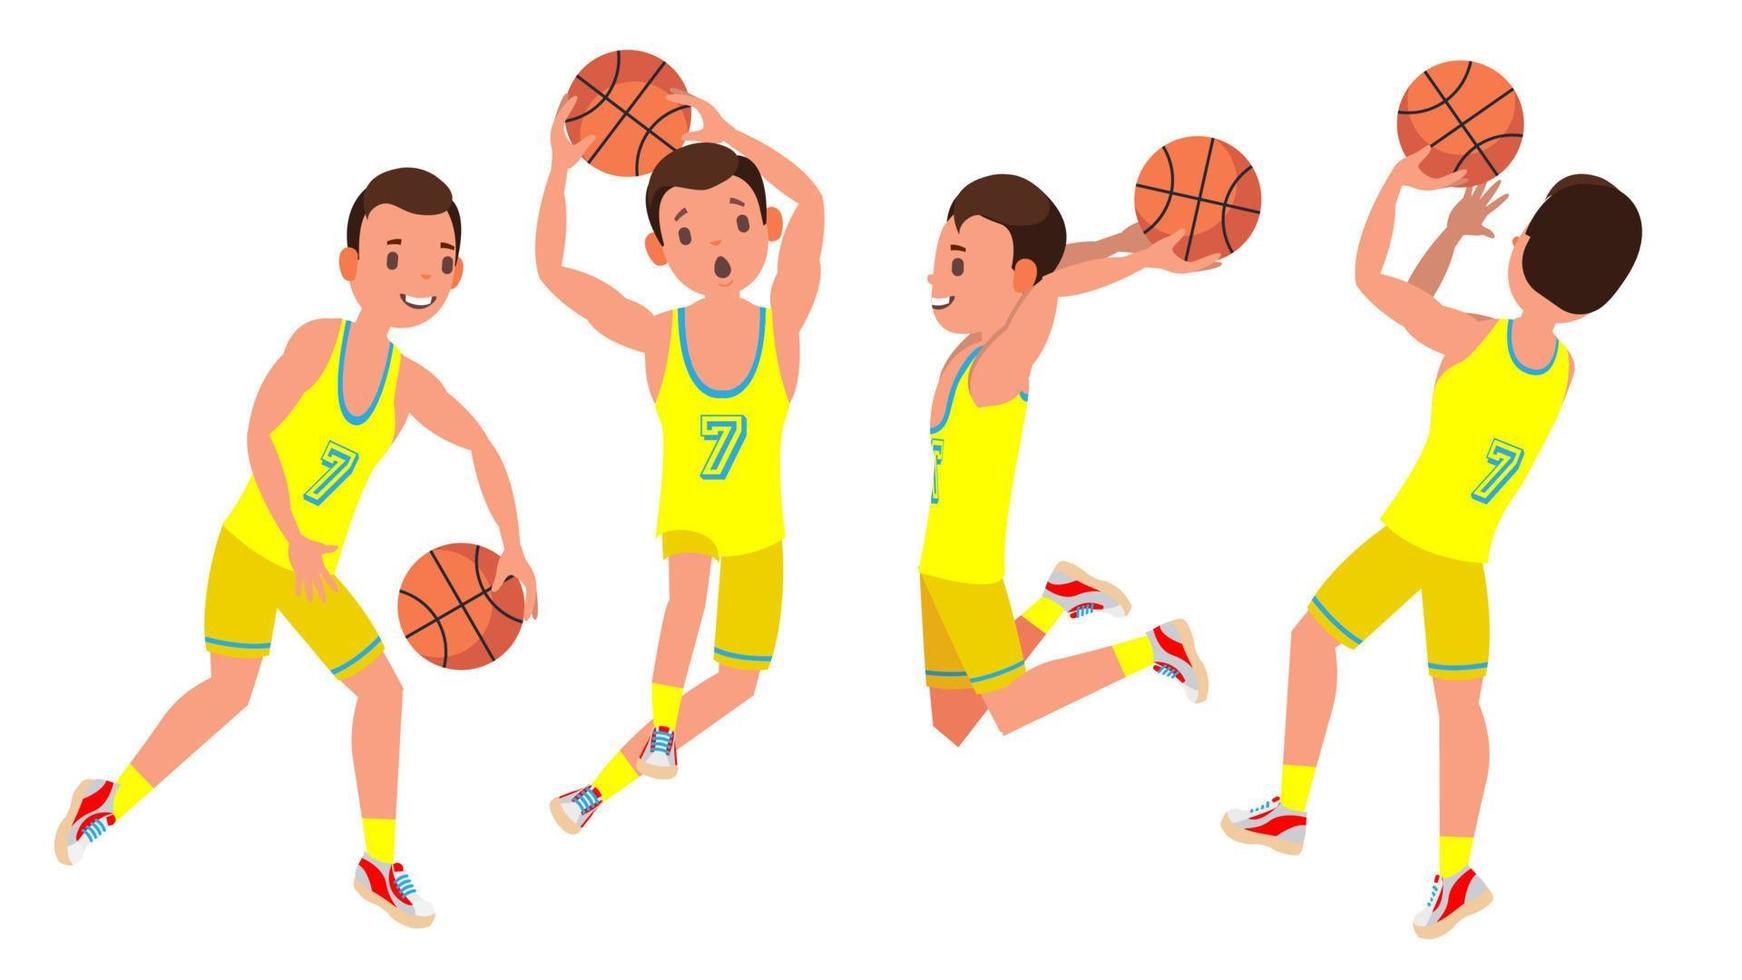 vector de jugador de baloncesto profesional. uniforme amarillo. jugando con una pelota. estilo de vida saludable. pegatinas de acción de equipo.aislado en la ilustración de personaje de dibujos animados blanco